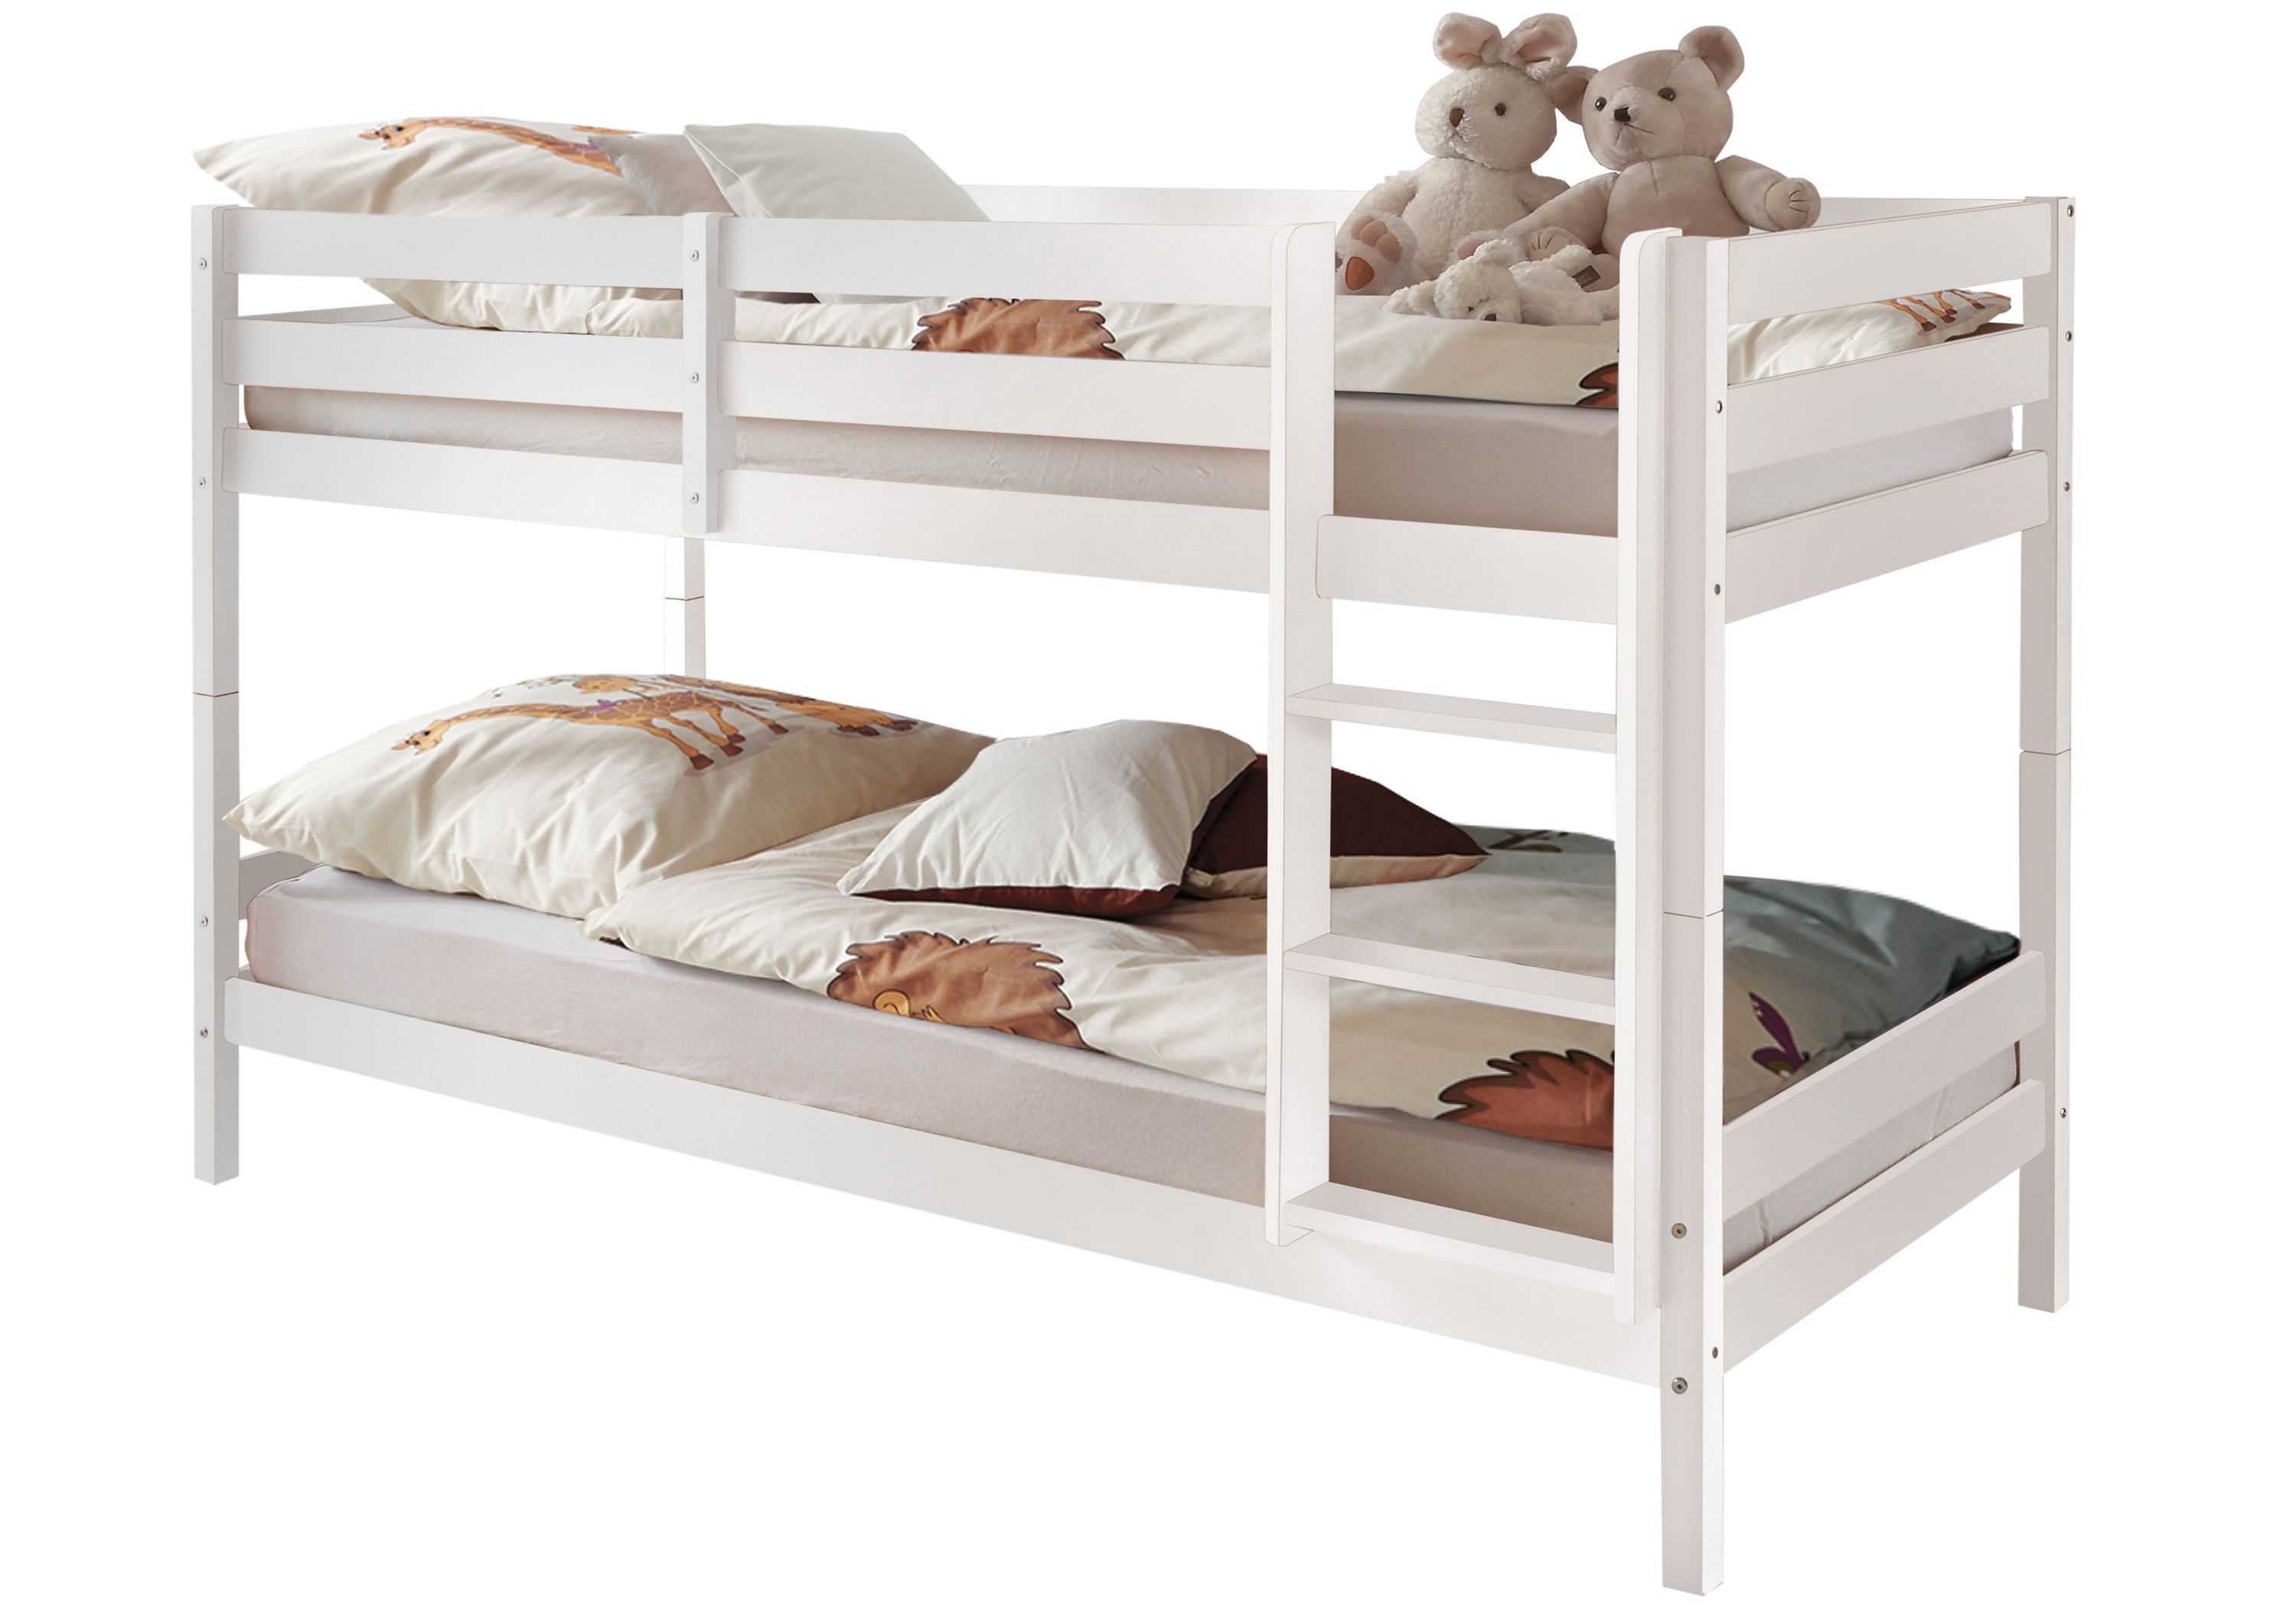 Etagenbett Kinder Kiefer massiv 90x200 | Doppelstockbett Hochbett eBay Kinderbett Weiß